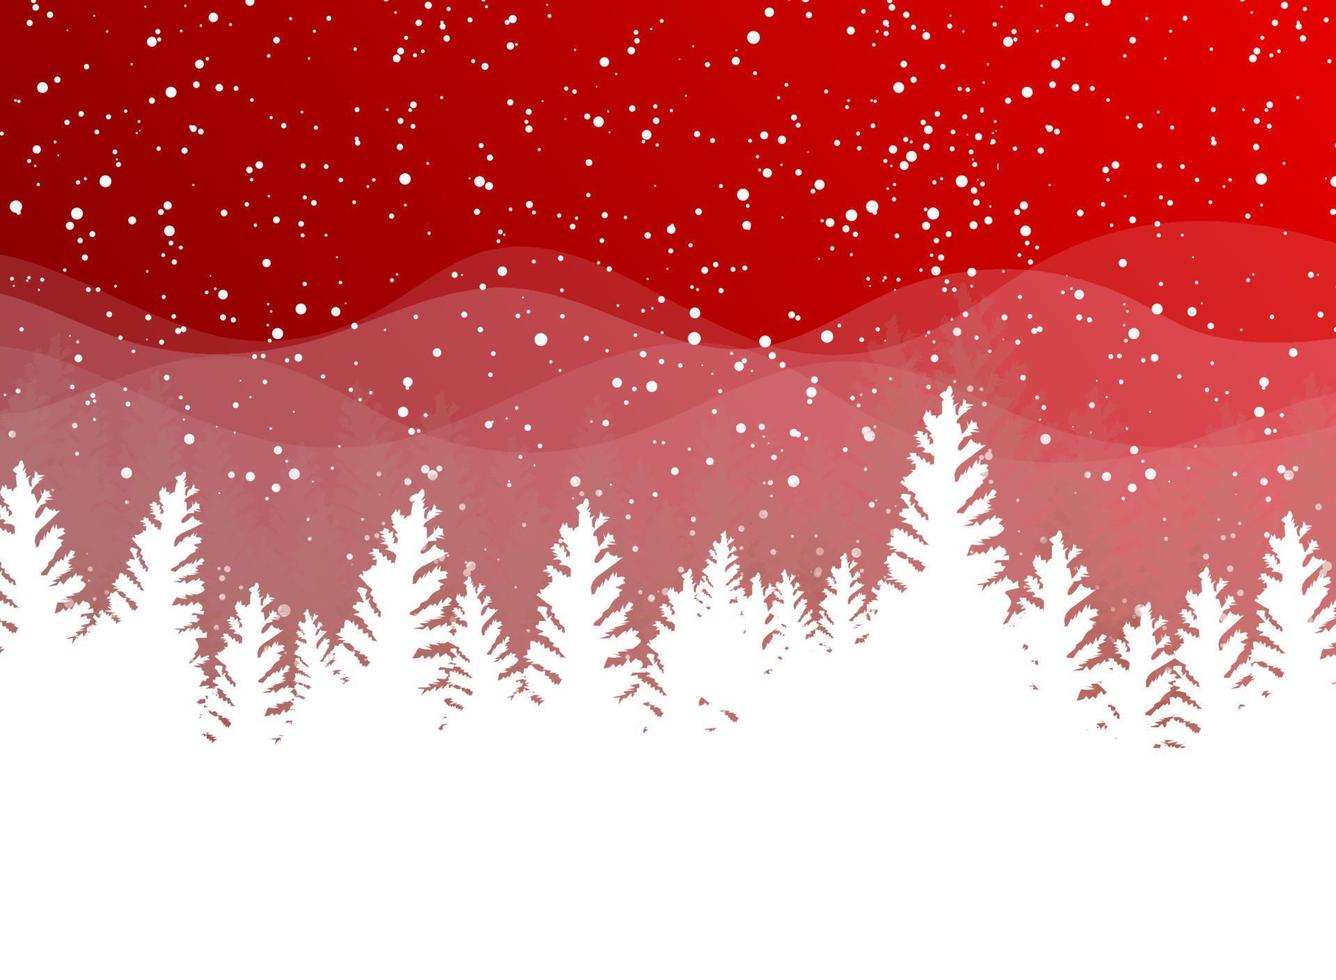 Weihnachtswinter auf rotem Grund. weißer Schnee mit Schneeflocken auf silbernem hellem Licht. Weihnachtsbaum. vektor